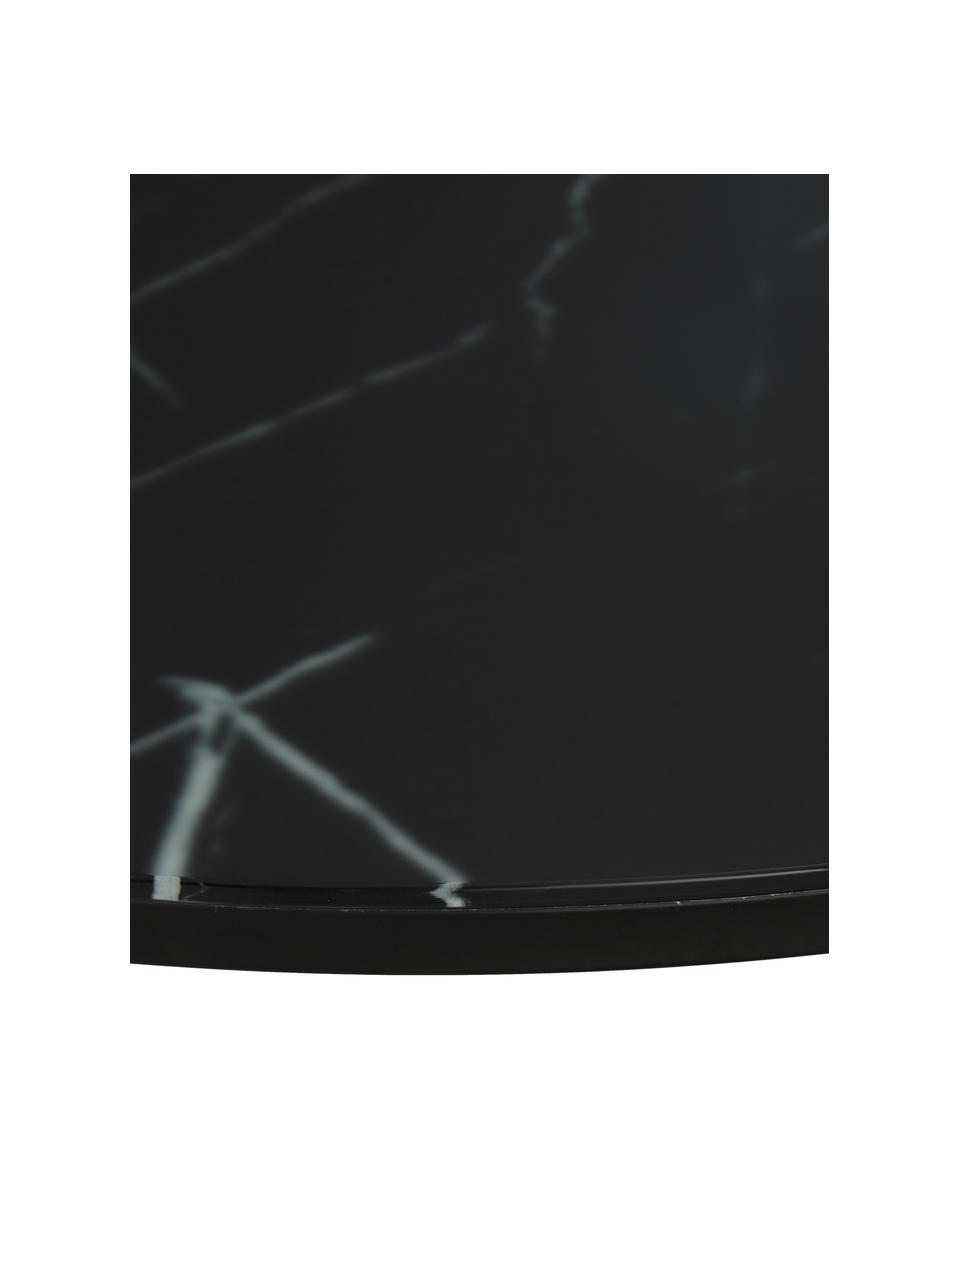 Stolik kawowy ze szklanym blatem o wyglądzie marmuru Antigua, Blat: szkło, matowy nadruk, Stelaż: stal malowana proszkowo, Czarny, imitacja marmuru, Ø 80 cm